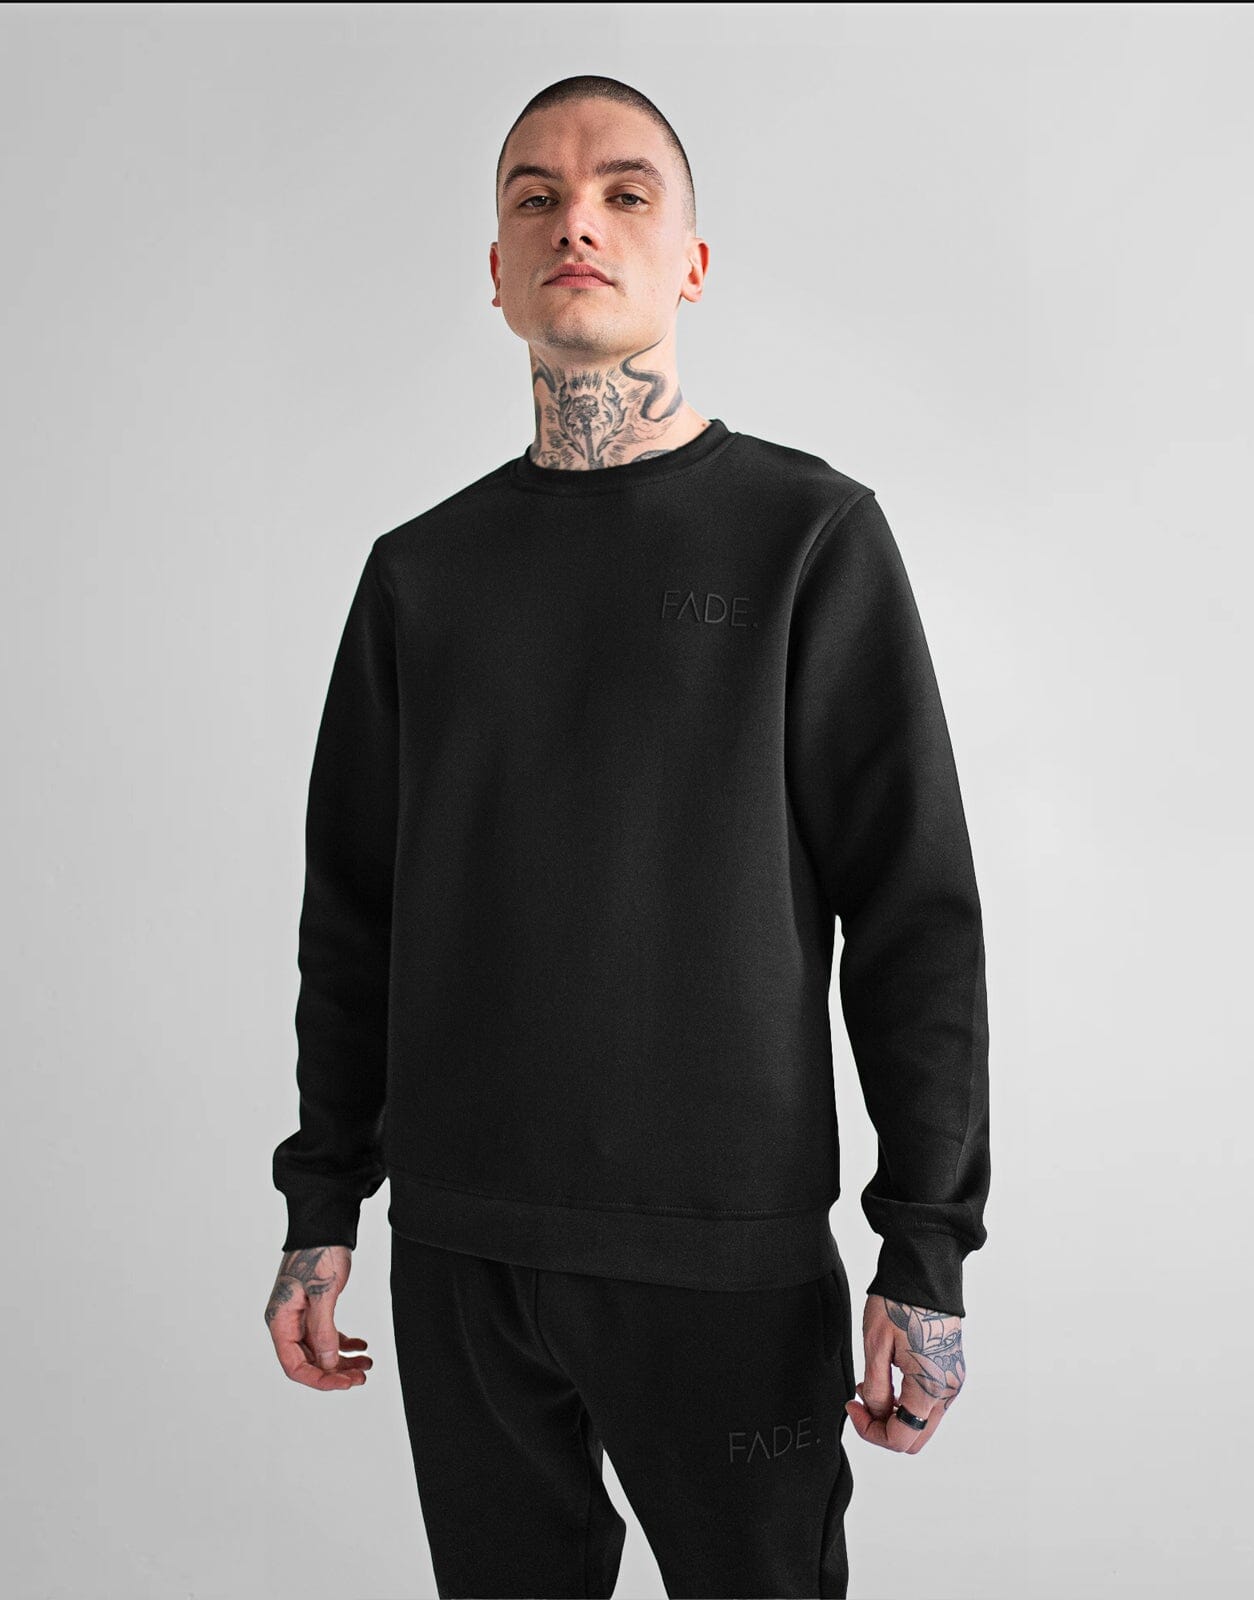 Fade Essential Sweatshirt Black - Subwear